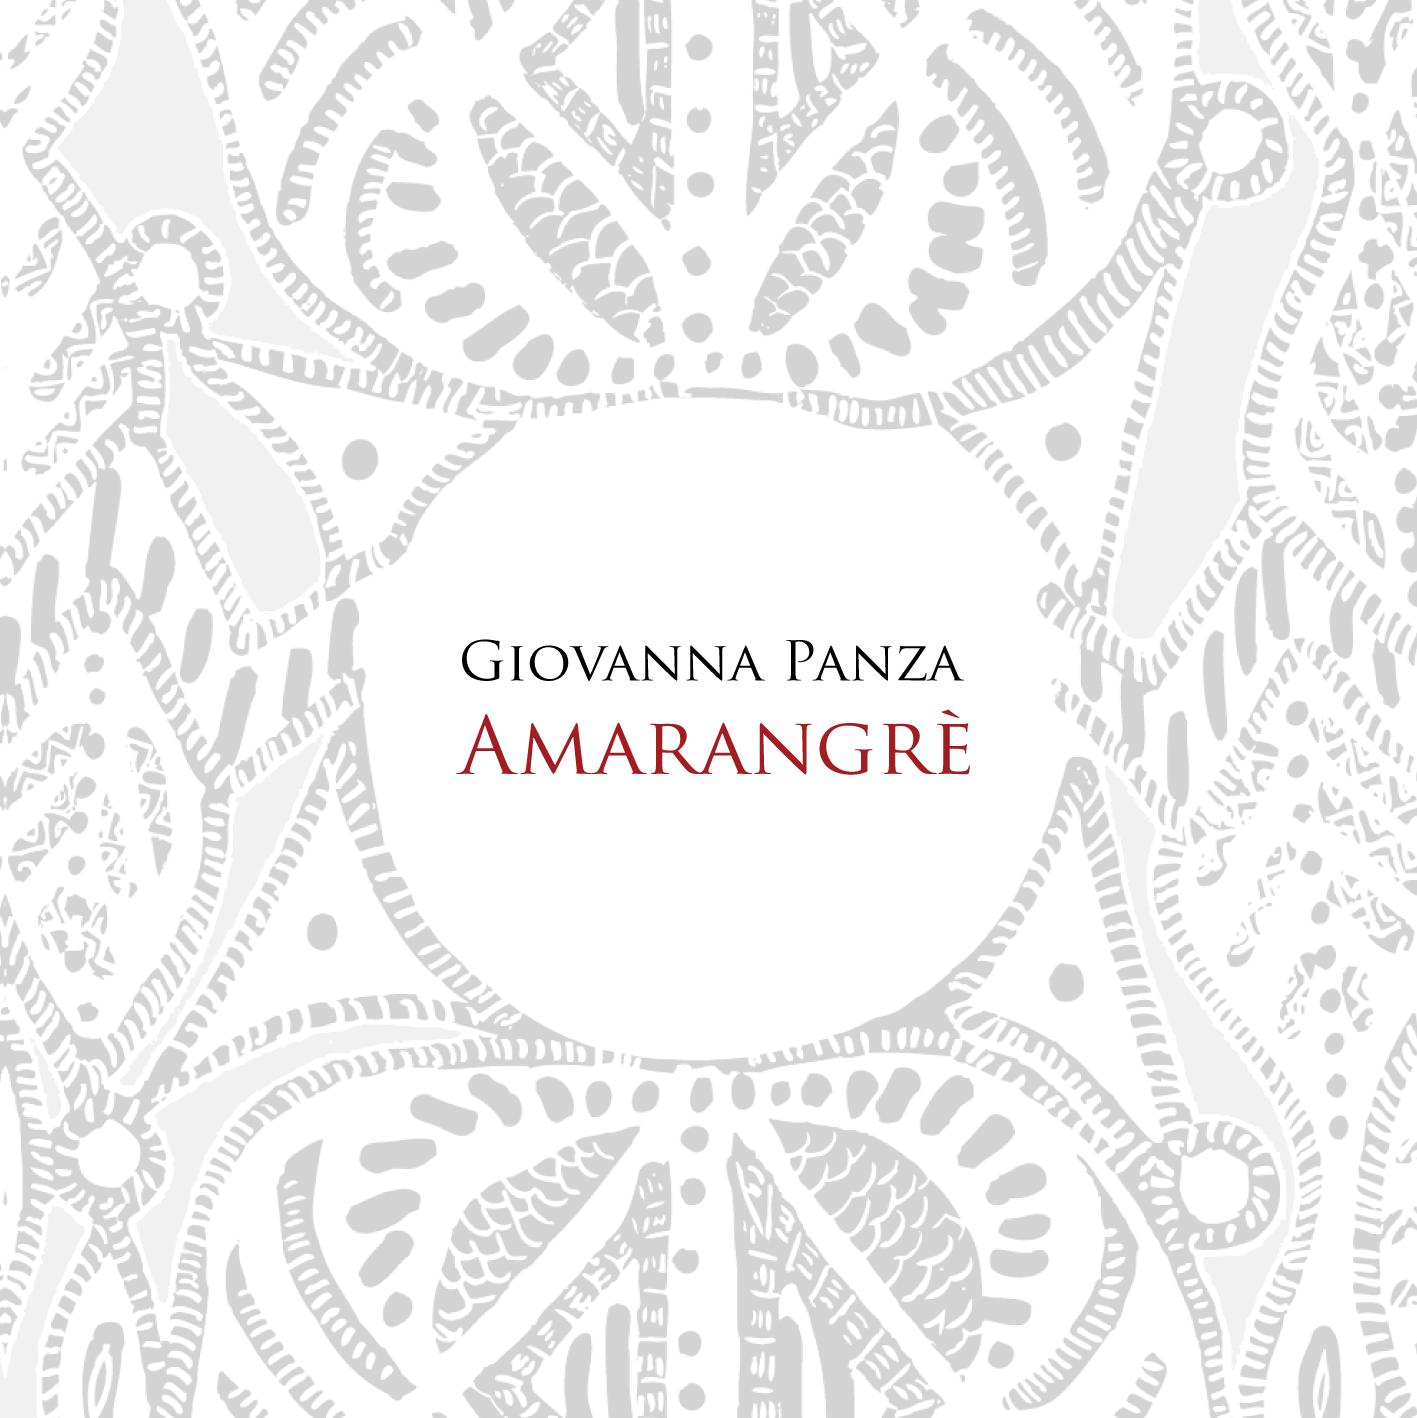 24/02/2013 – Concerto e presentazione album esordio di Giovanna Panza